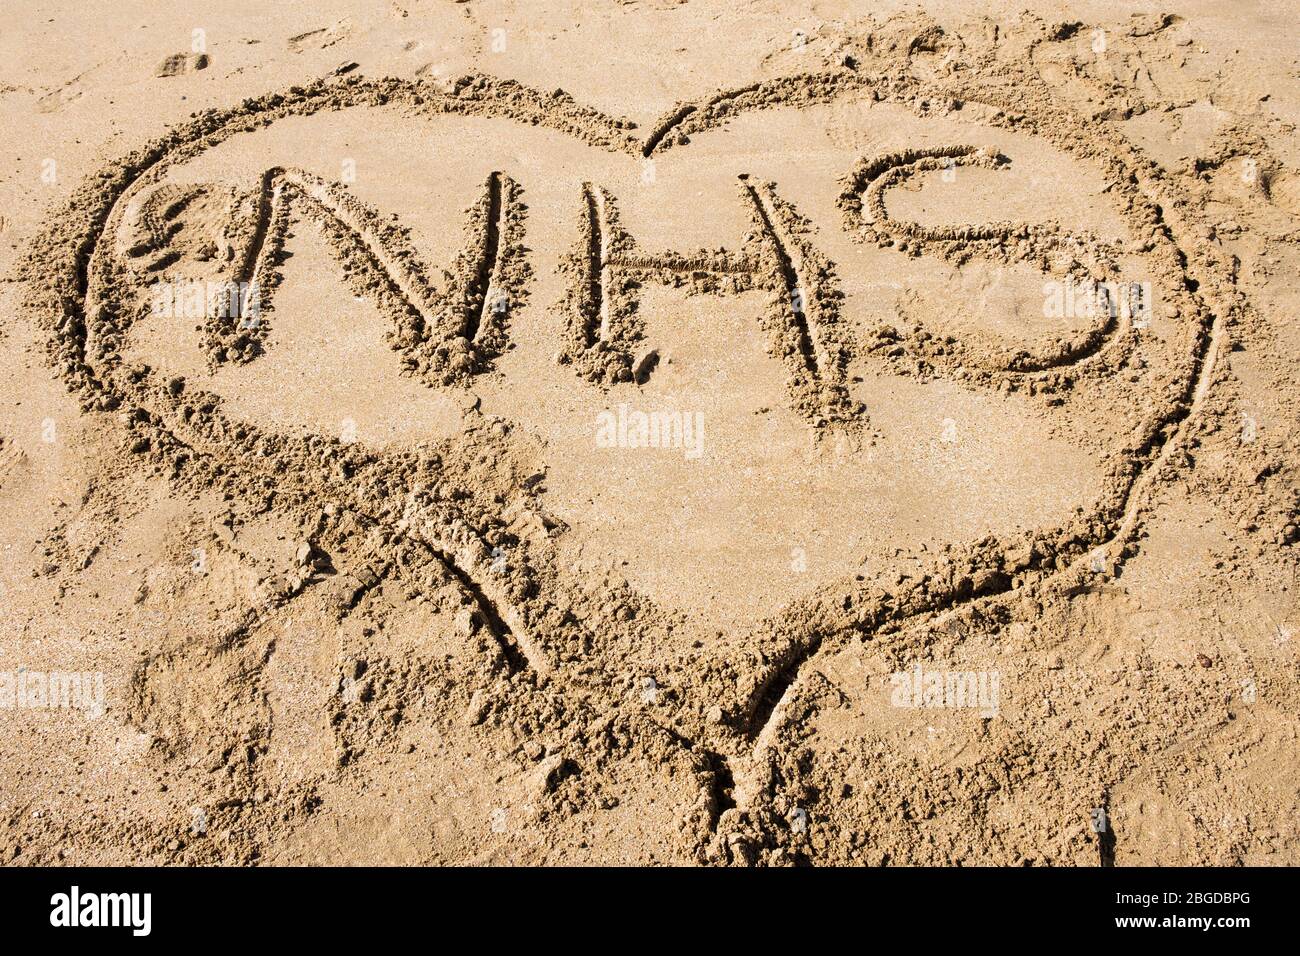 Le NHS écrit dans le sable à l'intérieur d'une forme de coeur pour illustrer l'amour le concept de Service national de santé pendant la pandémie de Covid-19 en 2020. Royaume-Uni, Grande-Bretagne Banque D'Images